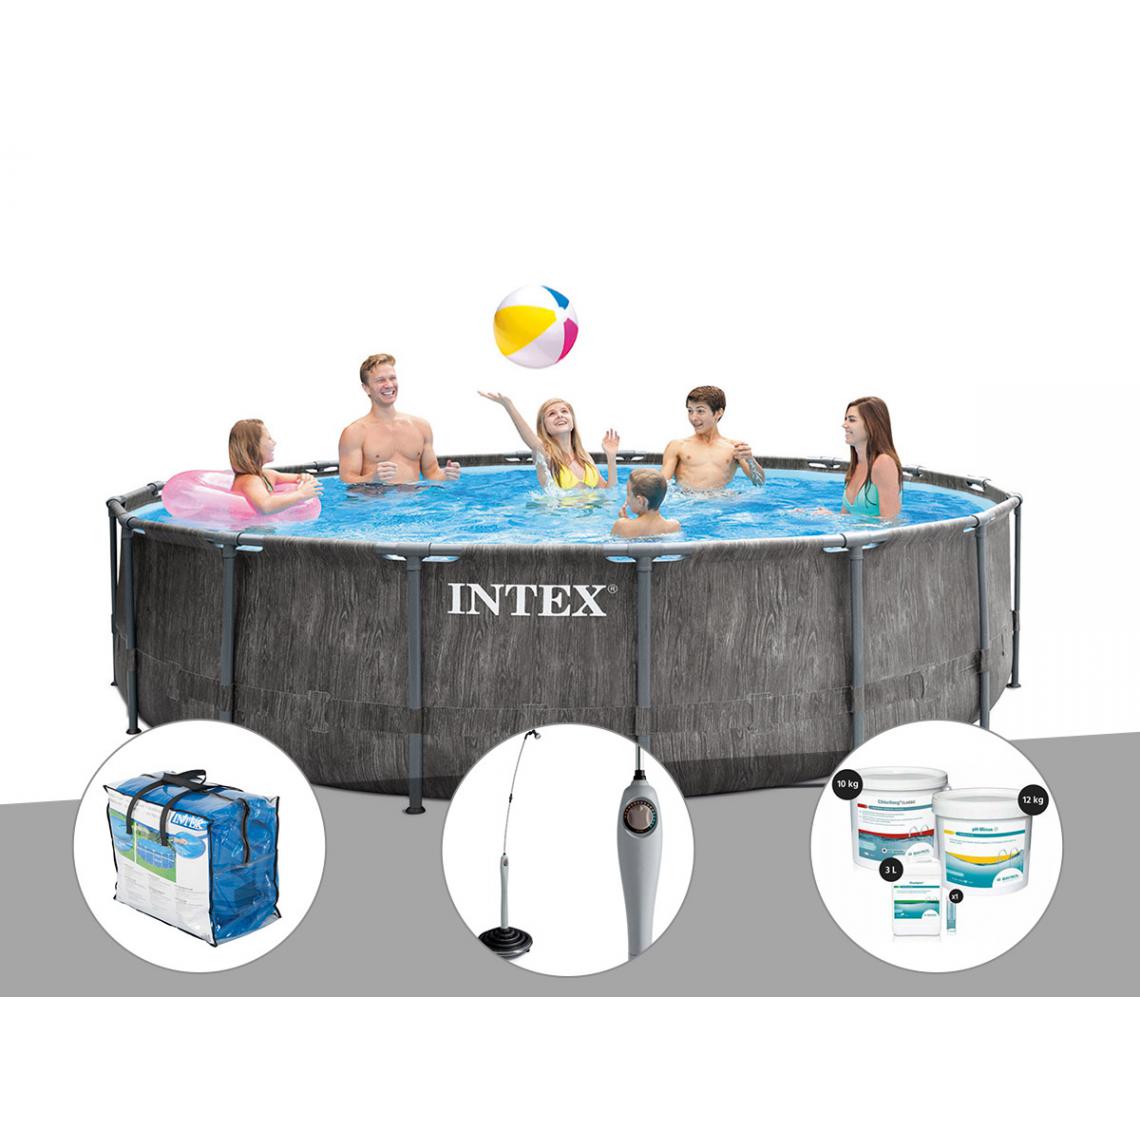 Intex - Kit piscine tubulaire Intex Baltik ronde 5,49 x 1,22 m + Bâche à bulles + Douche solaire + Kit de traitement au chlore - Piscine Tubulaire